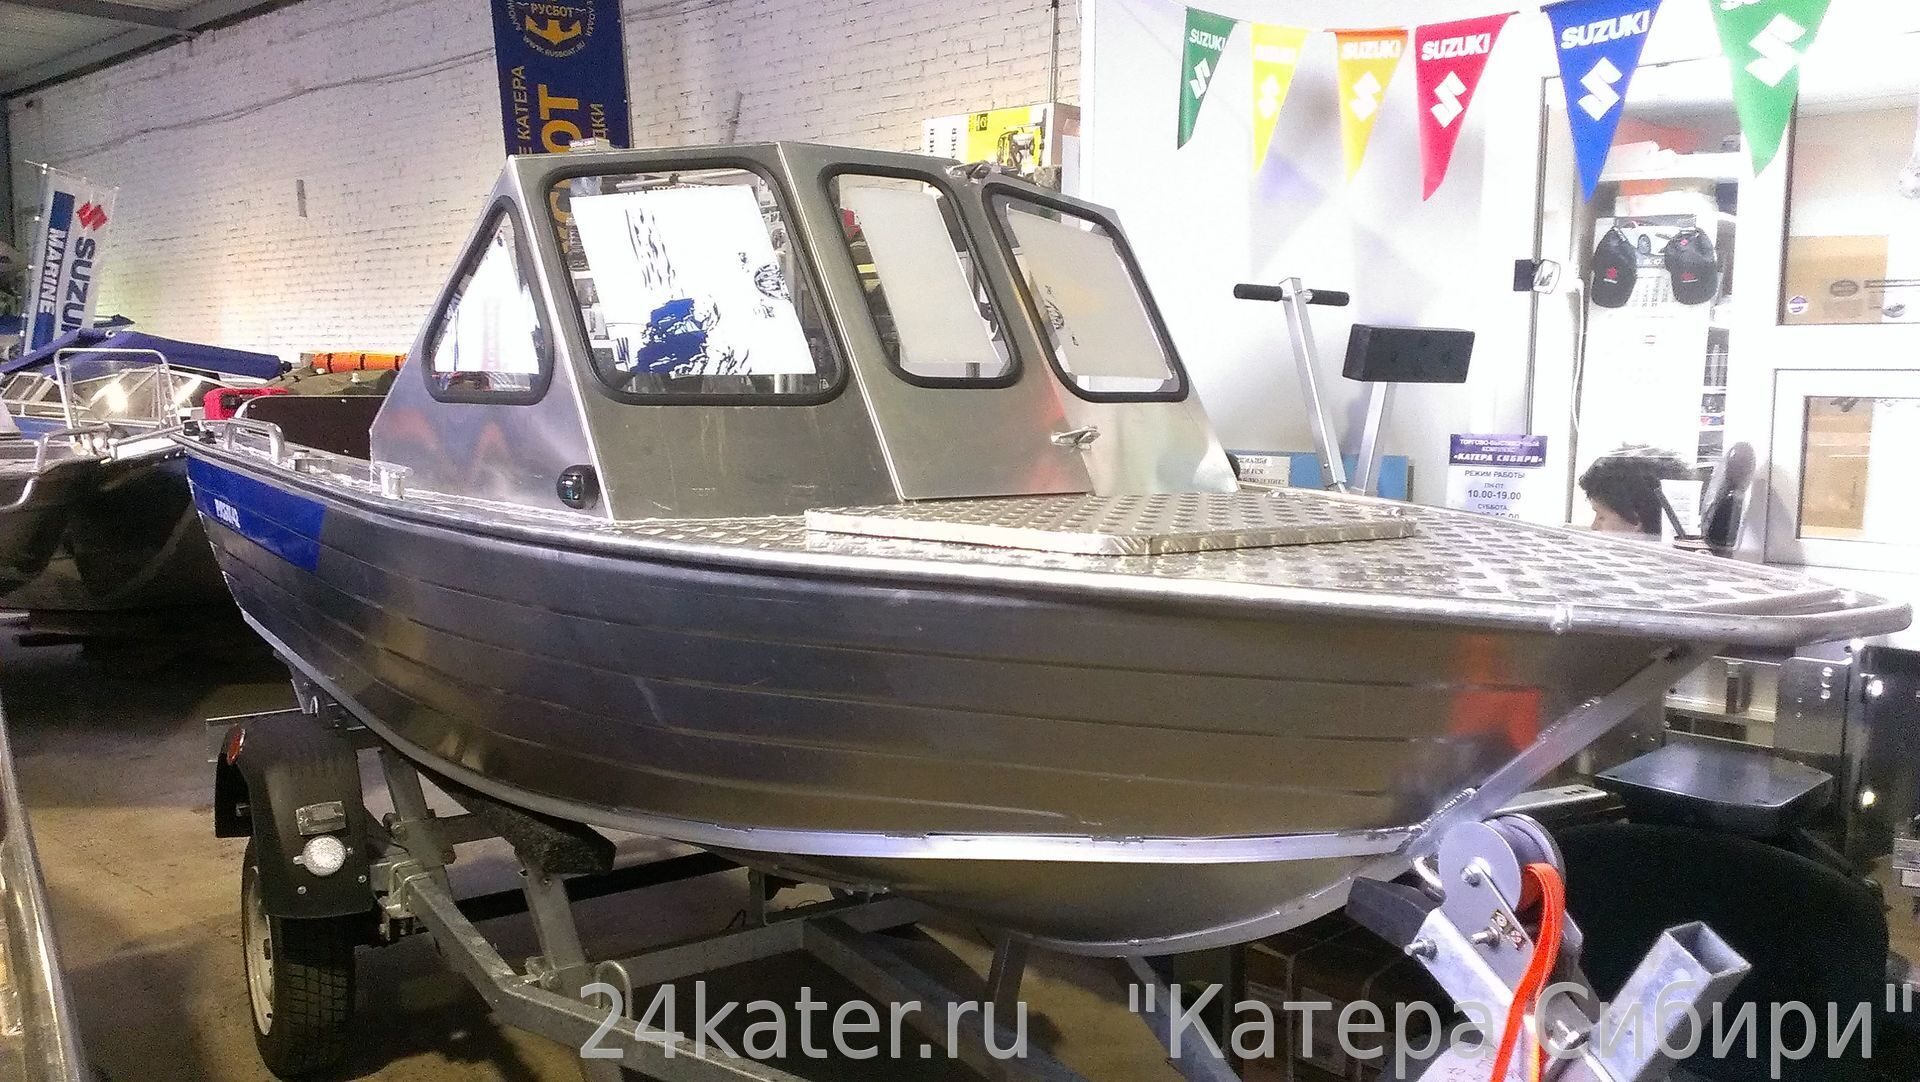 Rusboat 47